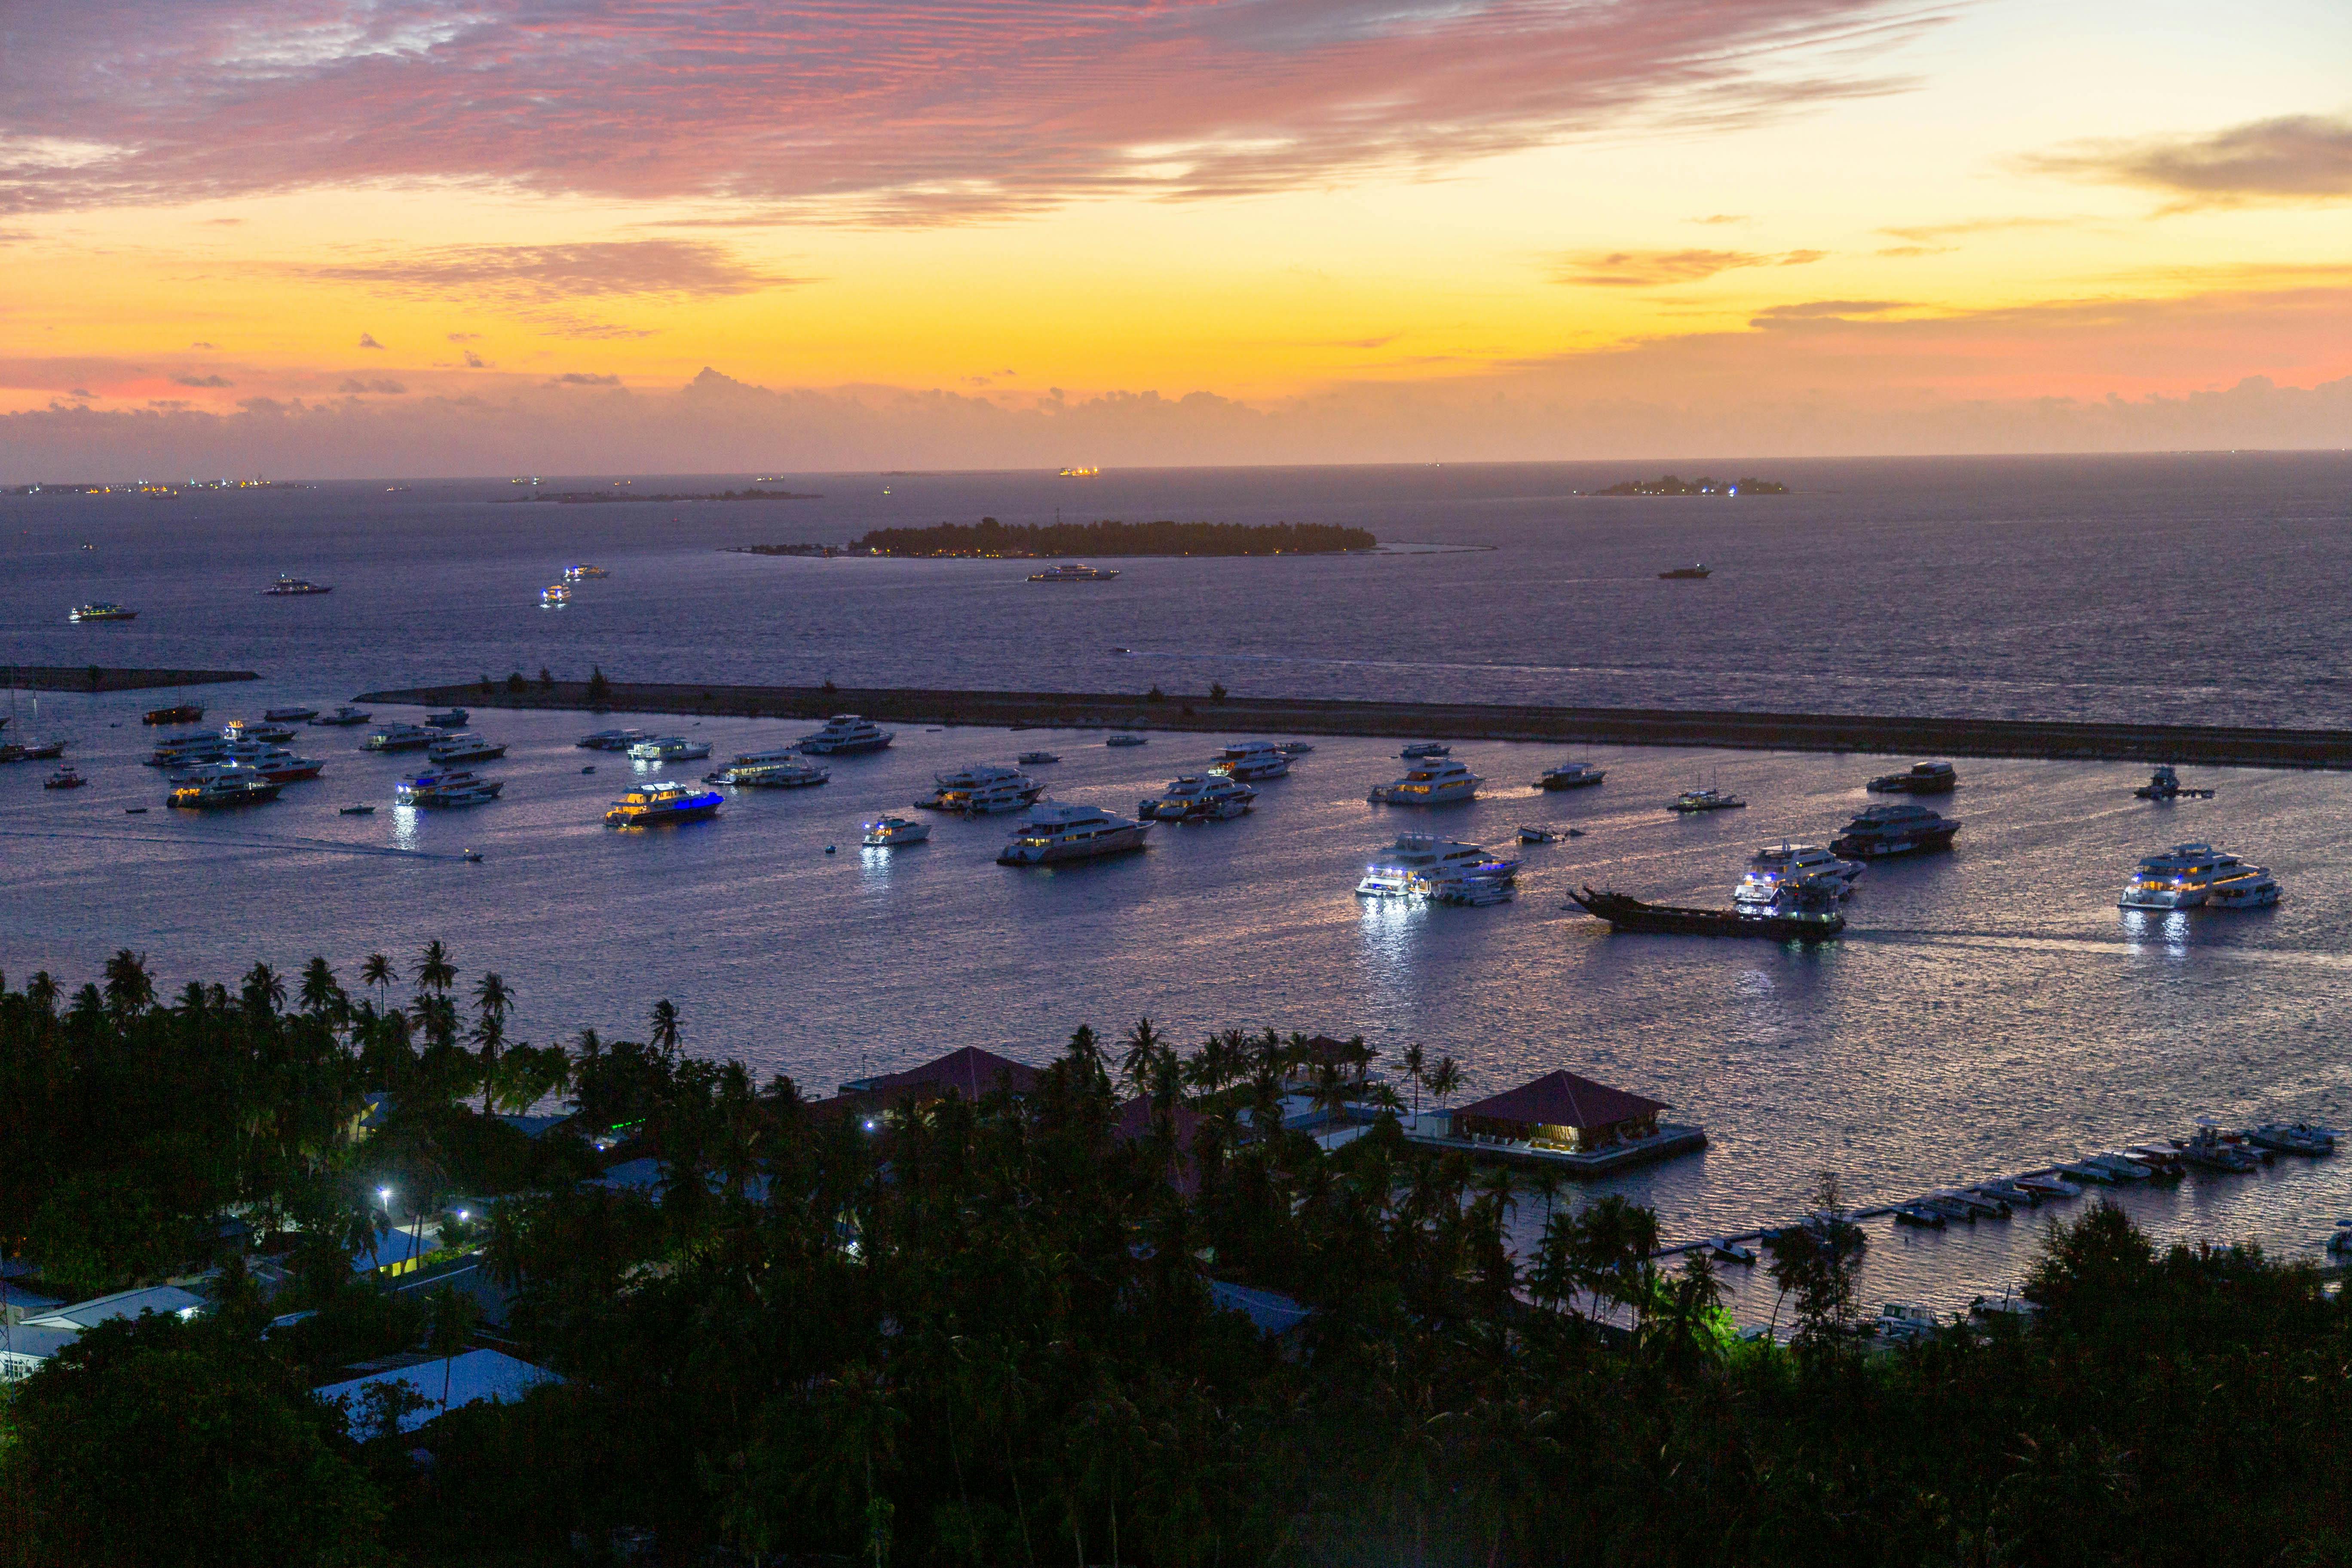 


<h3>5.1. Les Ferry-Boats</h3>
<p>Les <i>ferry-boats</i> jouent un rôle essentiel dans la connectivité maritime du Costa Rica, reliant le continent aux îles et aux destinations côtières. Ces bateaux offrent une opportunité unique de découvrir des joyaux cachés du pays, tels que les magnifiques îles du Golfe de Nicoya. L’embarquement à bord d’un ferry-boat vous permettra de savourer des <b>déplacements</b> paisibles à travers des eaux scintillantes tout en profitant de la brise marine.</p>
<p>Les <b>ferry-boats</b> sont adaptés à une variété de voyageurs, qu’il s’agisse de touristes en quête de plages isolées, de plongeurs cherchant à explorer les récifs coralliens sous-marins ou de voyageurs en quête d’aventure à la recherche de nouvelles expériences. Les horaires de ferry varient en fonction des destinations, mais la vue panoramique sur les paysages côtiers et la possibilité d’observer la faune marine en font une expérience mémorable pour tous les voyageurs au Costa Rica.</p>
<h3>5.2. Croisières Côtières</h3>
<p>Les <i>croisières côtières</i> au Costa Rica offrent une expérience de voyage de luxe pour les voyageurs en quête d’une exploration détendue et immersive. Ces croisières permettent aux passagers de naviguer le long des côtes du Costa Rica, offrant des panoramas spectaculaires sur la jungle luxuriante, les plages immaculées et les formations rocheuses étonnantes. En optant pour une croisière côtière, vous serez aux premières loges pour découvrir la biodiversité exceptionnelle du Costa Rica, car ces eaux abritent une abondance de vie marine.</p>
<p>Lors de ces <b>déplacements</b> en mer, vous pourrez également profiter de tout le confort et les commodités d’un navire de croisière, notamment des repas gastronomiques, des activités de loisirs et des excursions guidées à terre. C’est une option idéale pour ceux qui souhaitent combiner l’exploration côtière avec une expérience de <i>travail indépendant</i> ou simplement se détendre dans un cadre paradisiaque. Les croisières côtières sont généralement proposées avec une variété de forfaits, offrant ainsi une flexibilité pour répondre à vos préférences et à votre budget.</p>
<ul>
<li>Excursions dans des criques cachées.</li>
<li>Observation de la faune marine, y compris les dauphins et les tortues.</li>
<li>Activités de plongée en apnée pour explorer les récifs coralliens.</li>
<li>Dégustation de la cuisine locale à bord.</li>
<li>Options de relaxation sur les plages éloignées.</li>
</ul>
<p>Les croisières côtières au Costa Rica offrent une expérience de voyage sans pareille, où l’aventure et la détente se conjuguent pour créer des souvenirs inoubliables.</p>
<p> » /><br />
Le chapitre « 5. Transport Maritime » revêt une importance significative dans le contexte des <b>déplacements</b> au Costa Rica, en particulier pour ceux qui souhaitent explorer les régions côtières, les îles, et les destinations éloignées du pays. Avec ses deux côtes bordant l’océan Pacifique et la mer des Caraïbes, le Costa Rica offre une multitude d’opportunités pour les voyageurs désireux de découvrir des endroits reculés et exotiques.</p>
<p>Les options de <b>transport maritime</b> comprennent des ferries reliant les ports continentaux aux îles, ainsi que des croisières côtières offrant une expérience de voyage unique. Les ferries sont couramment utilisés pour se rendre sur des îles comme Isla Tortuga et Isla del Coco, qui sont des destinations prisées pour la plongée en apnée, la plongée sous-marine, et la détente sur des plages de sable blanc. Les croisières côtières, quant à elles, permettent aux voyageurs d’explorer la beauté naturelle du Costa Rica depuis la mer, en offrant des panoramas époustouflants sur la côte et une opportunité de découvrir la faune marine.</p>
<p>Que vous soyez un voyageur en quête d’aventure ou que vous recherchiez simplement un moyen de <i><a href=